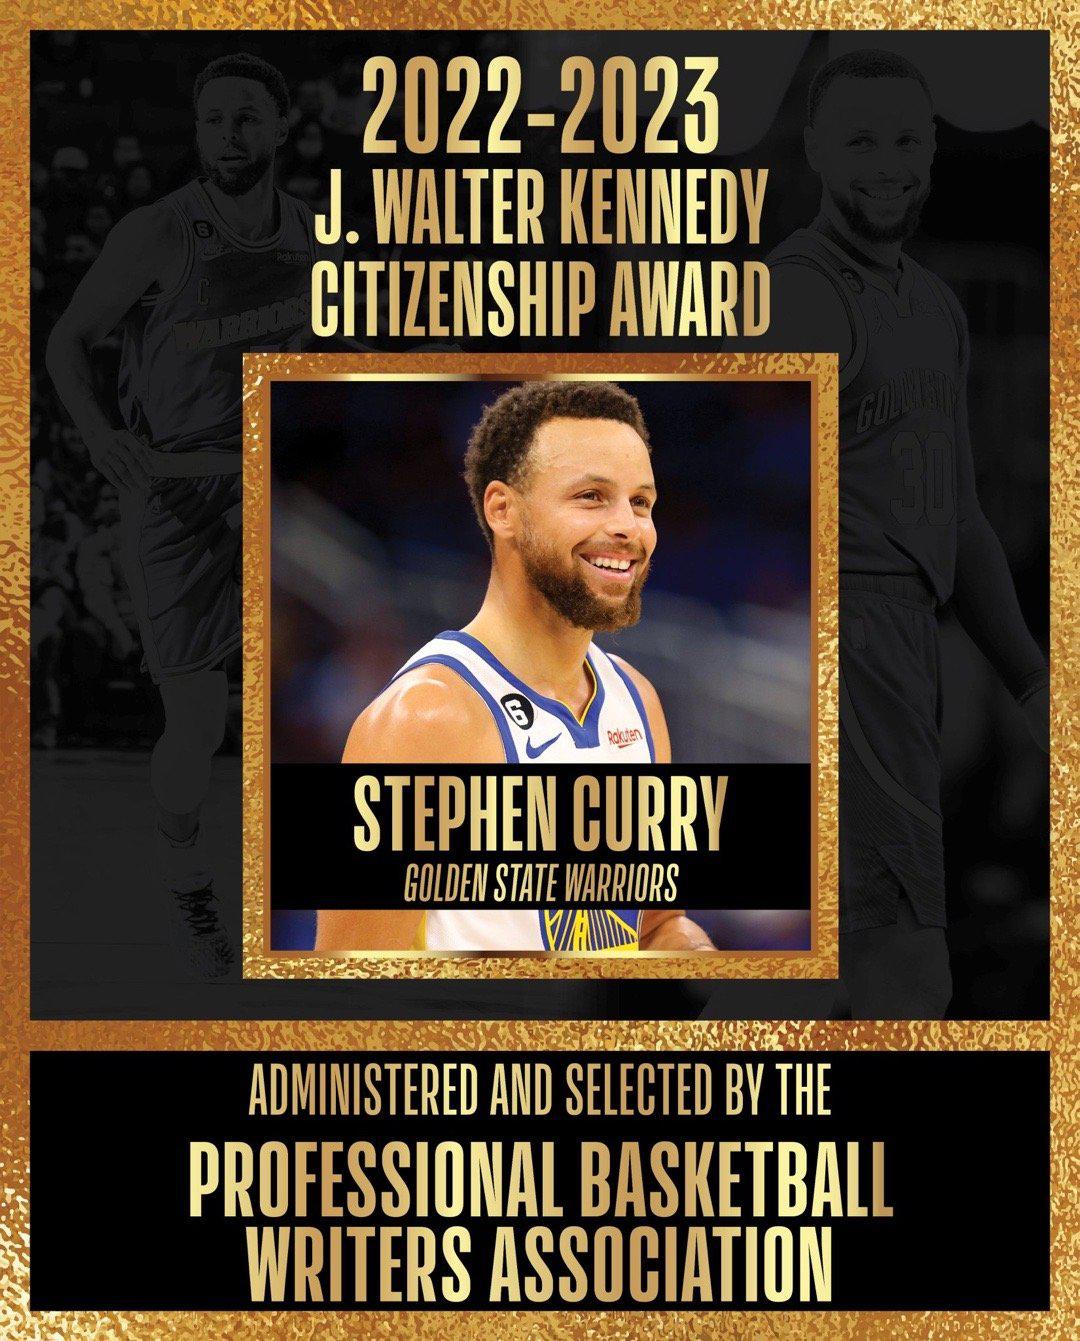 斯蒂芬库里被职业篮球作家协会授予2023年J.Walter Kennedy公民奖